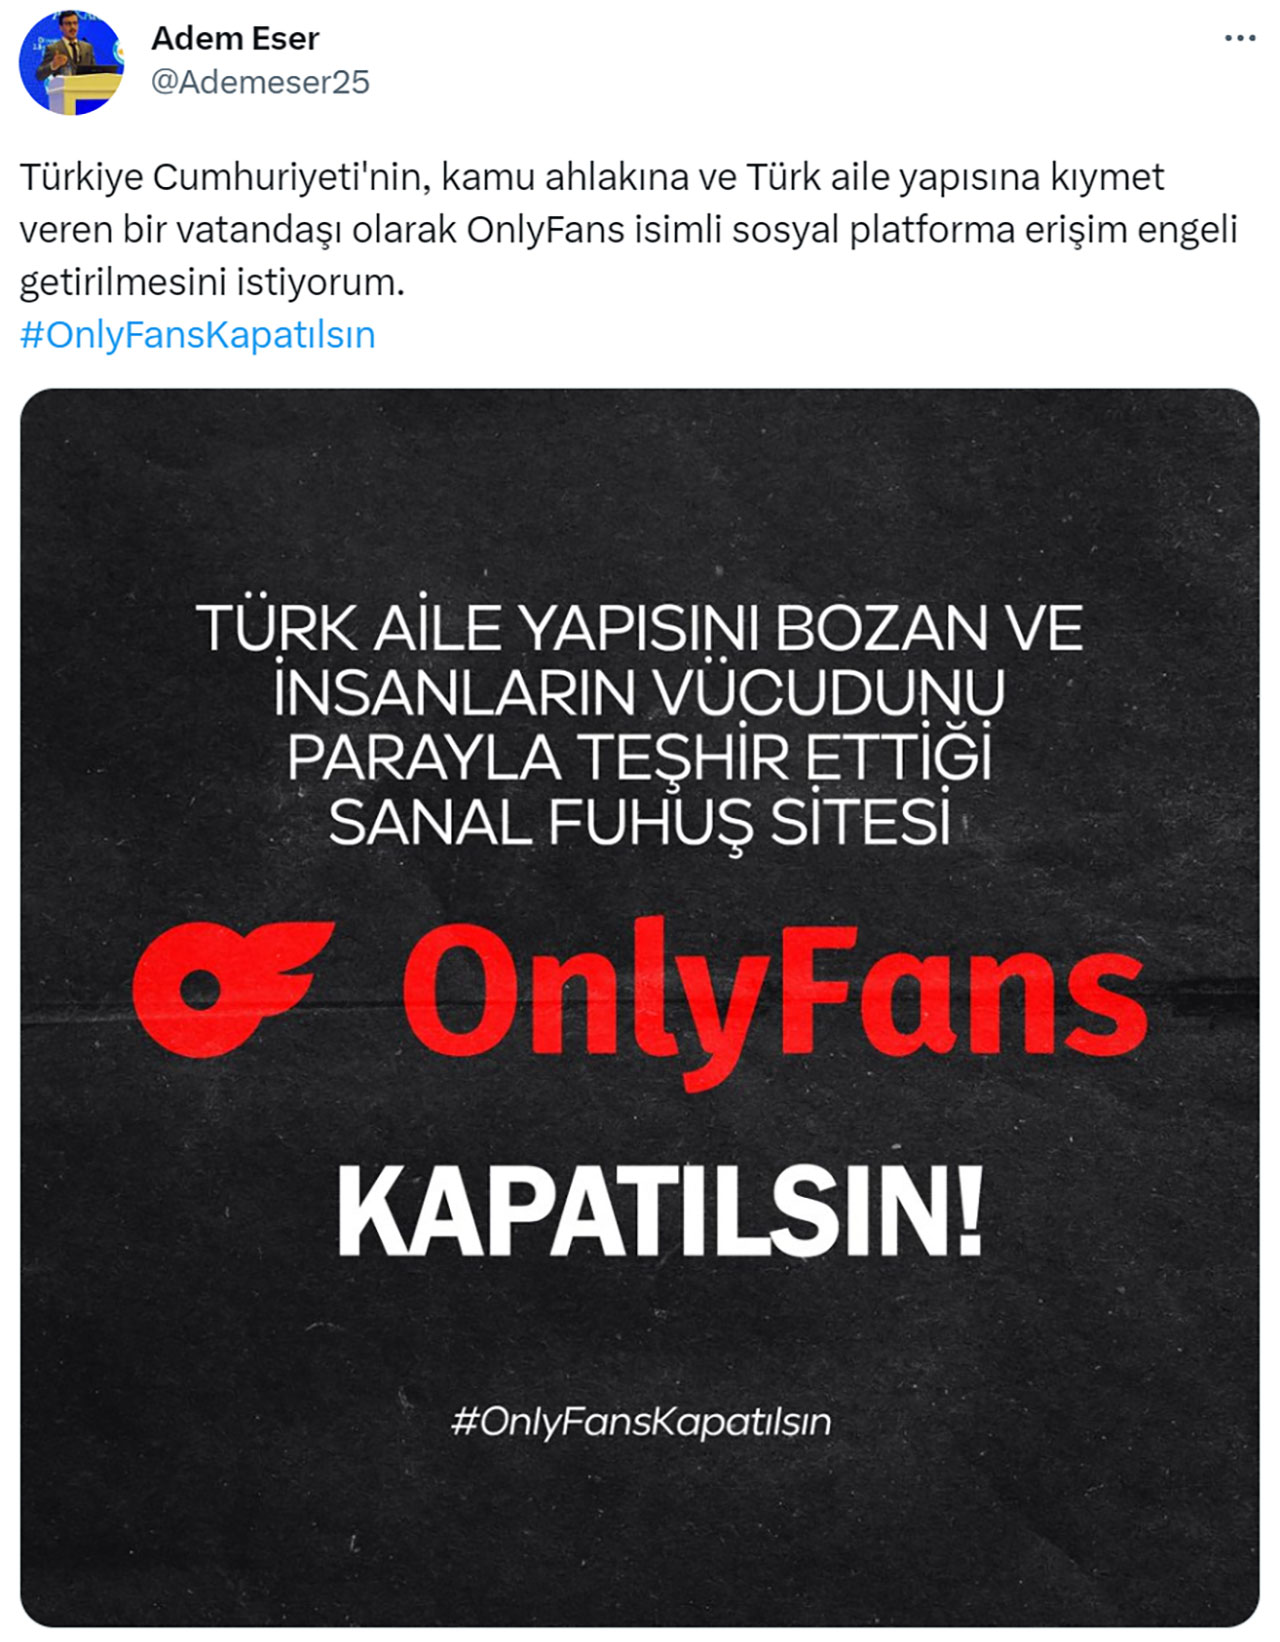 Meral Erden: Twitter'da OnlyFans'ın Kapanması İçin "Kampanya" Başlatıldı - Webtekno 17